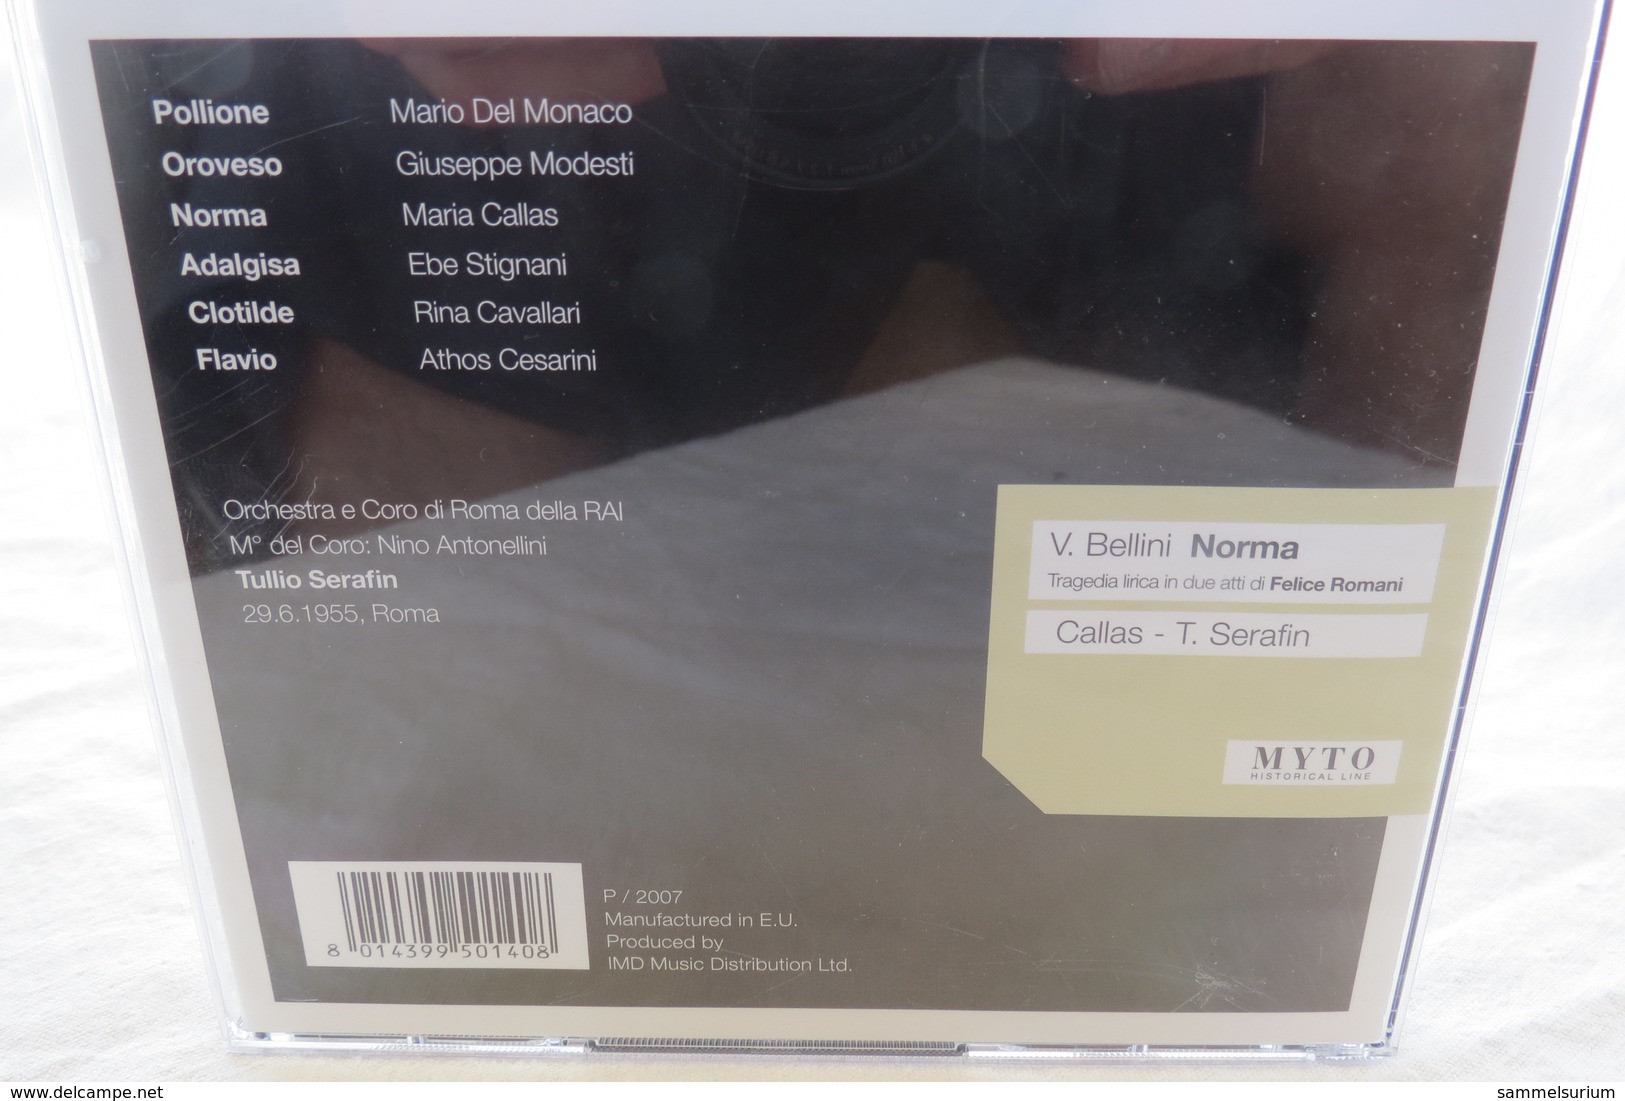 2 CDs "Vincenzo Bellini - Norma" M. Callas, Tullio Serafin - Opere